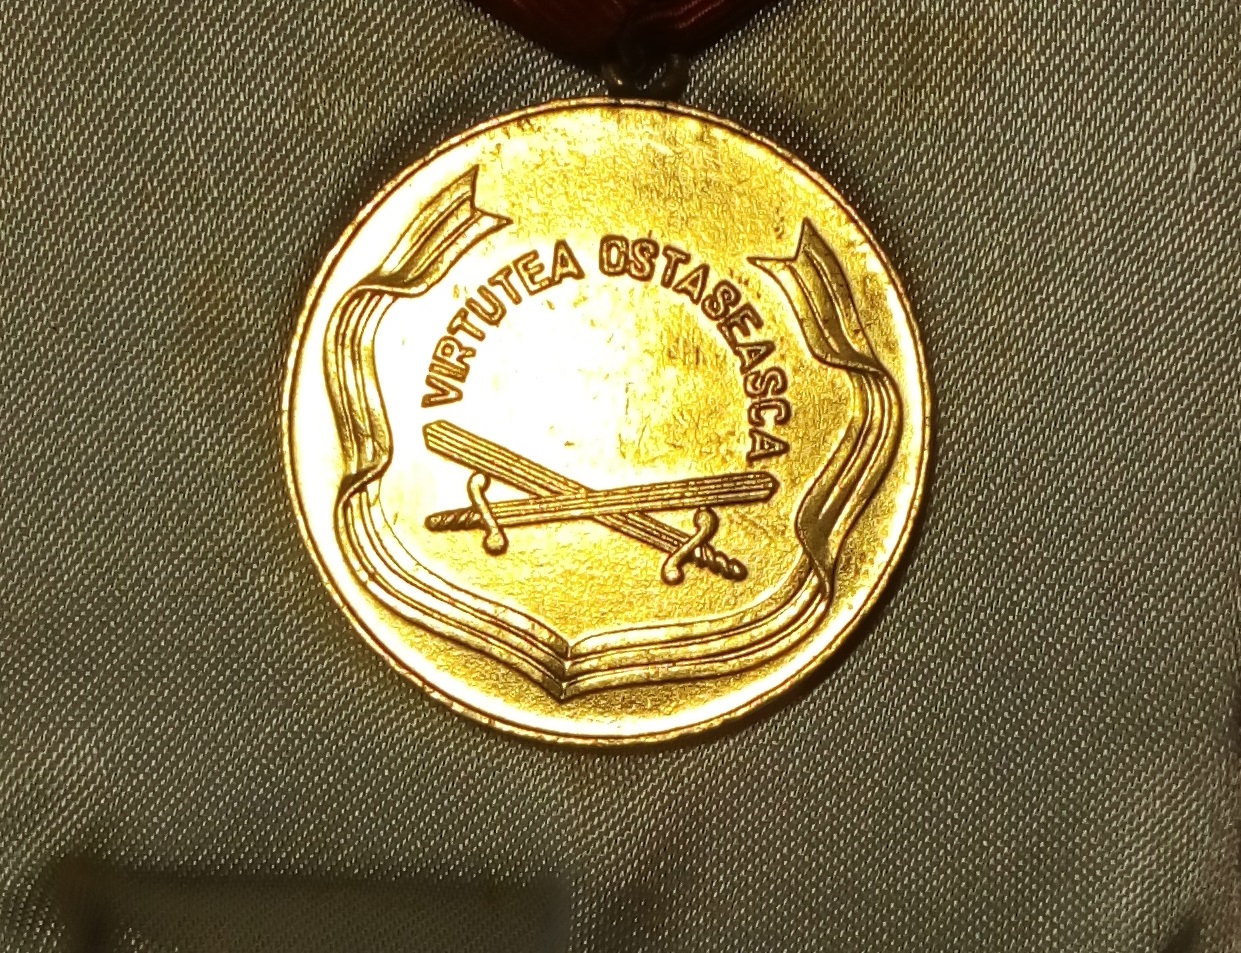 Medalia Virtutea Ostaseasca clasa I